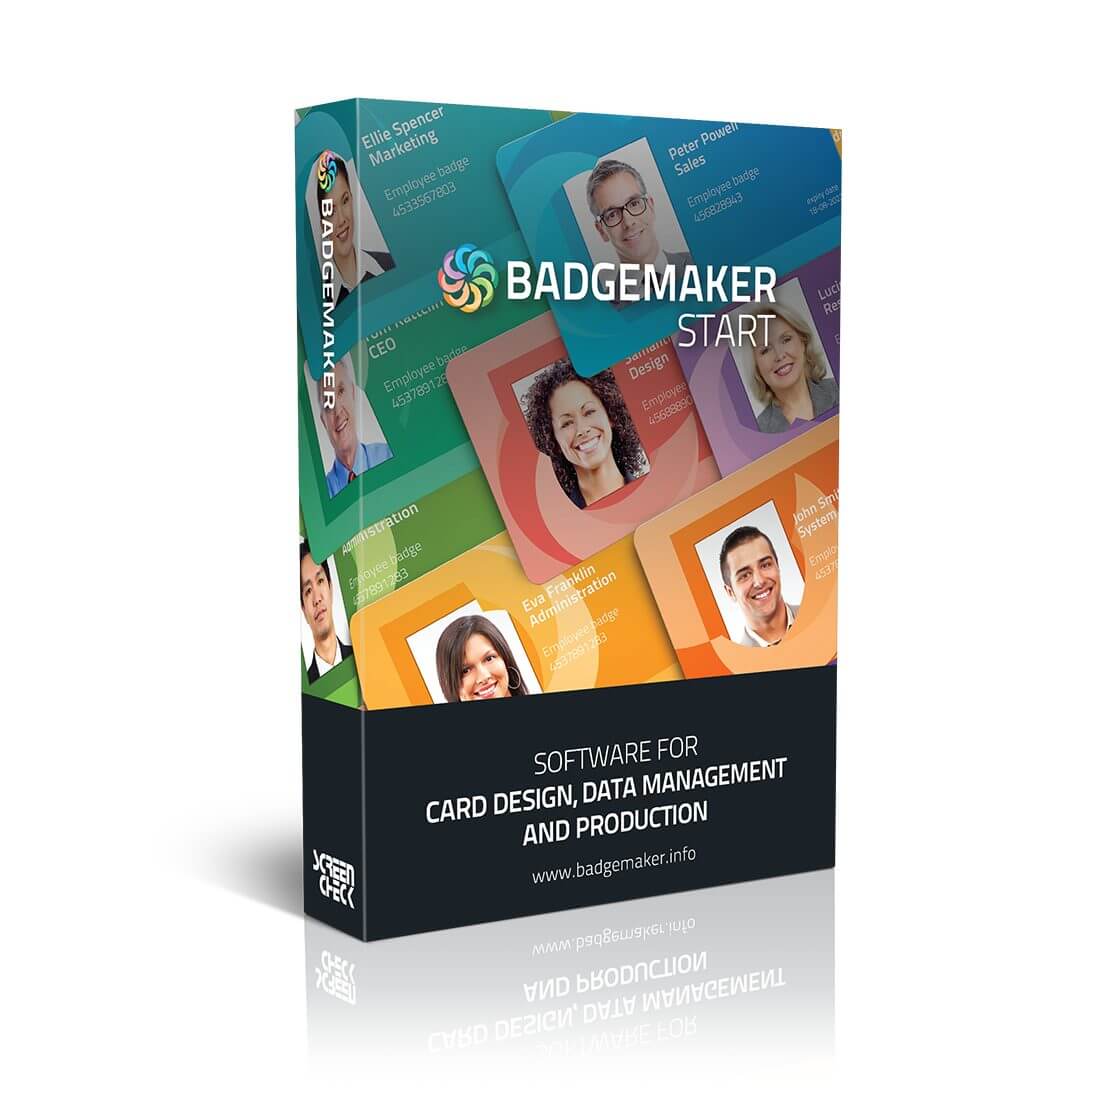 BadgeMaker-START-product